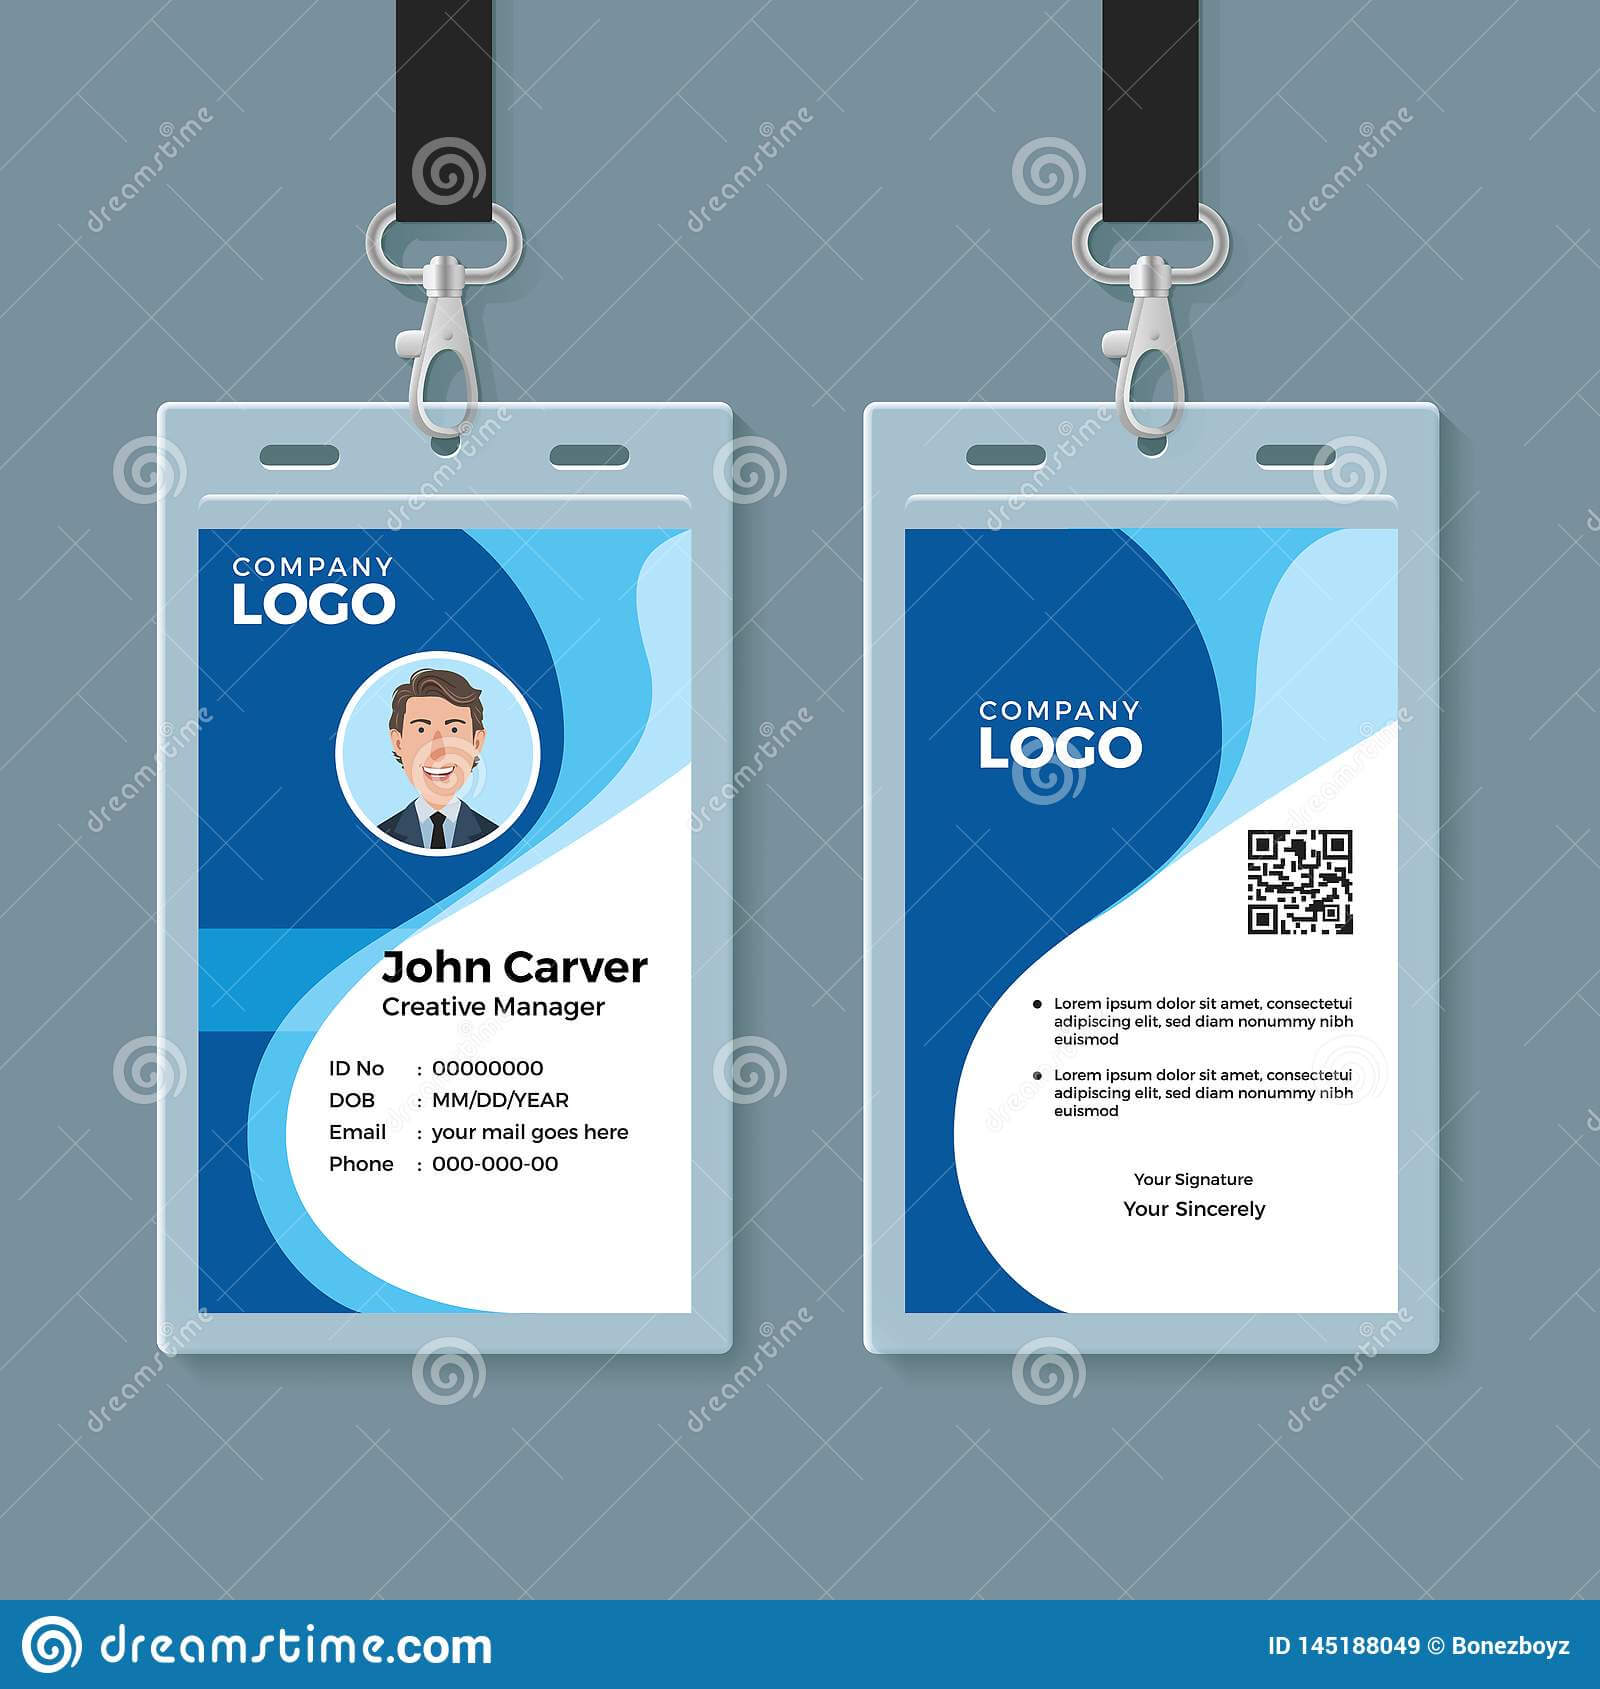 Blue Curve Wave Id Card Design Template Stock Vector With Company Id Card Design Template